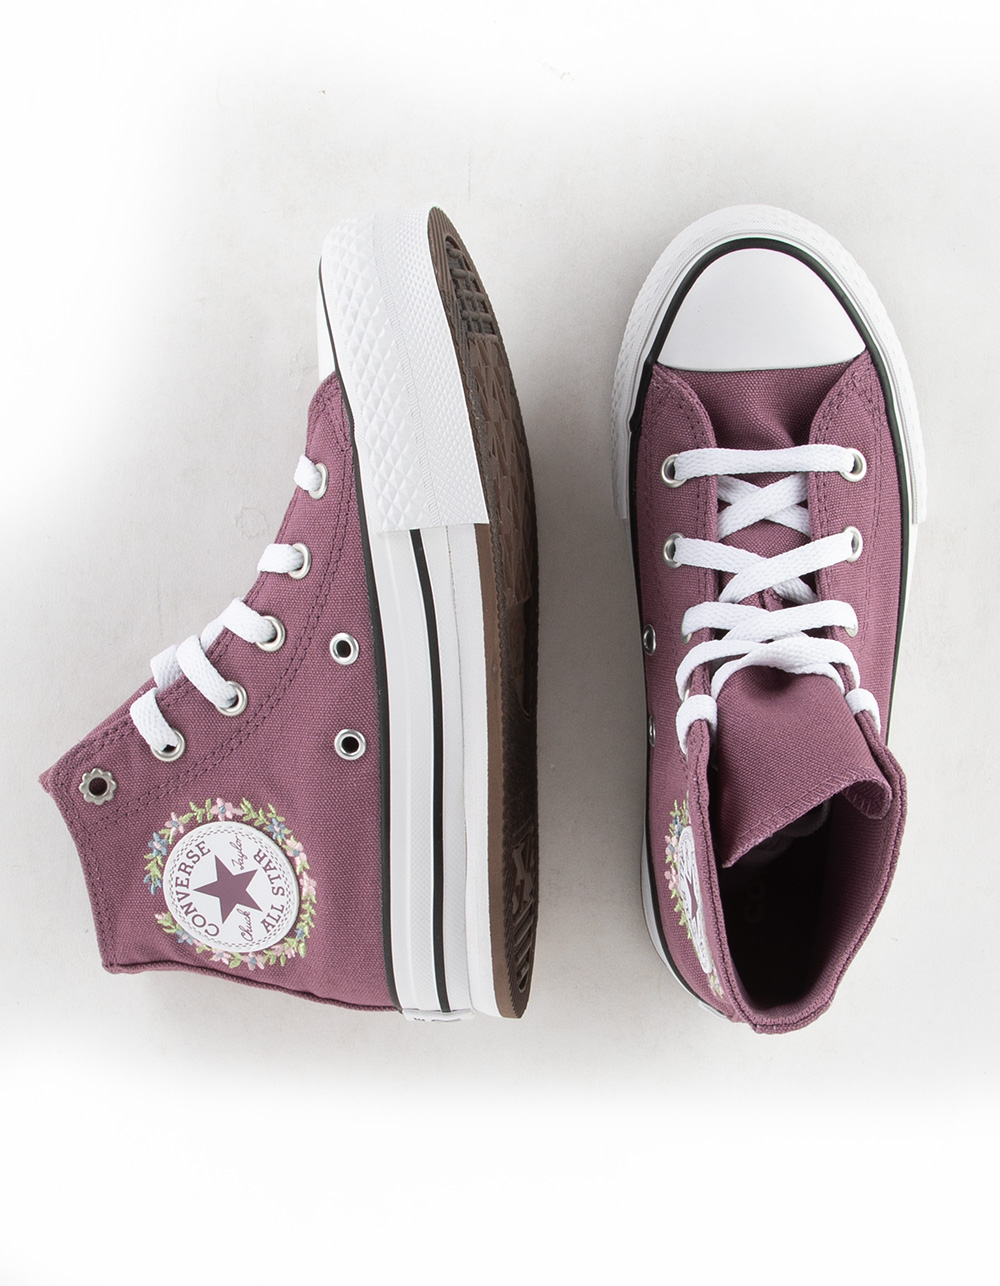 Star | Chuck EVA Girls Tillys CONVERSE Platform - PURPLE Shoes Taylor Lift High All Top